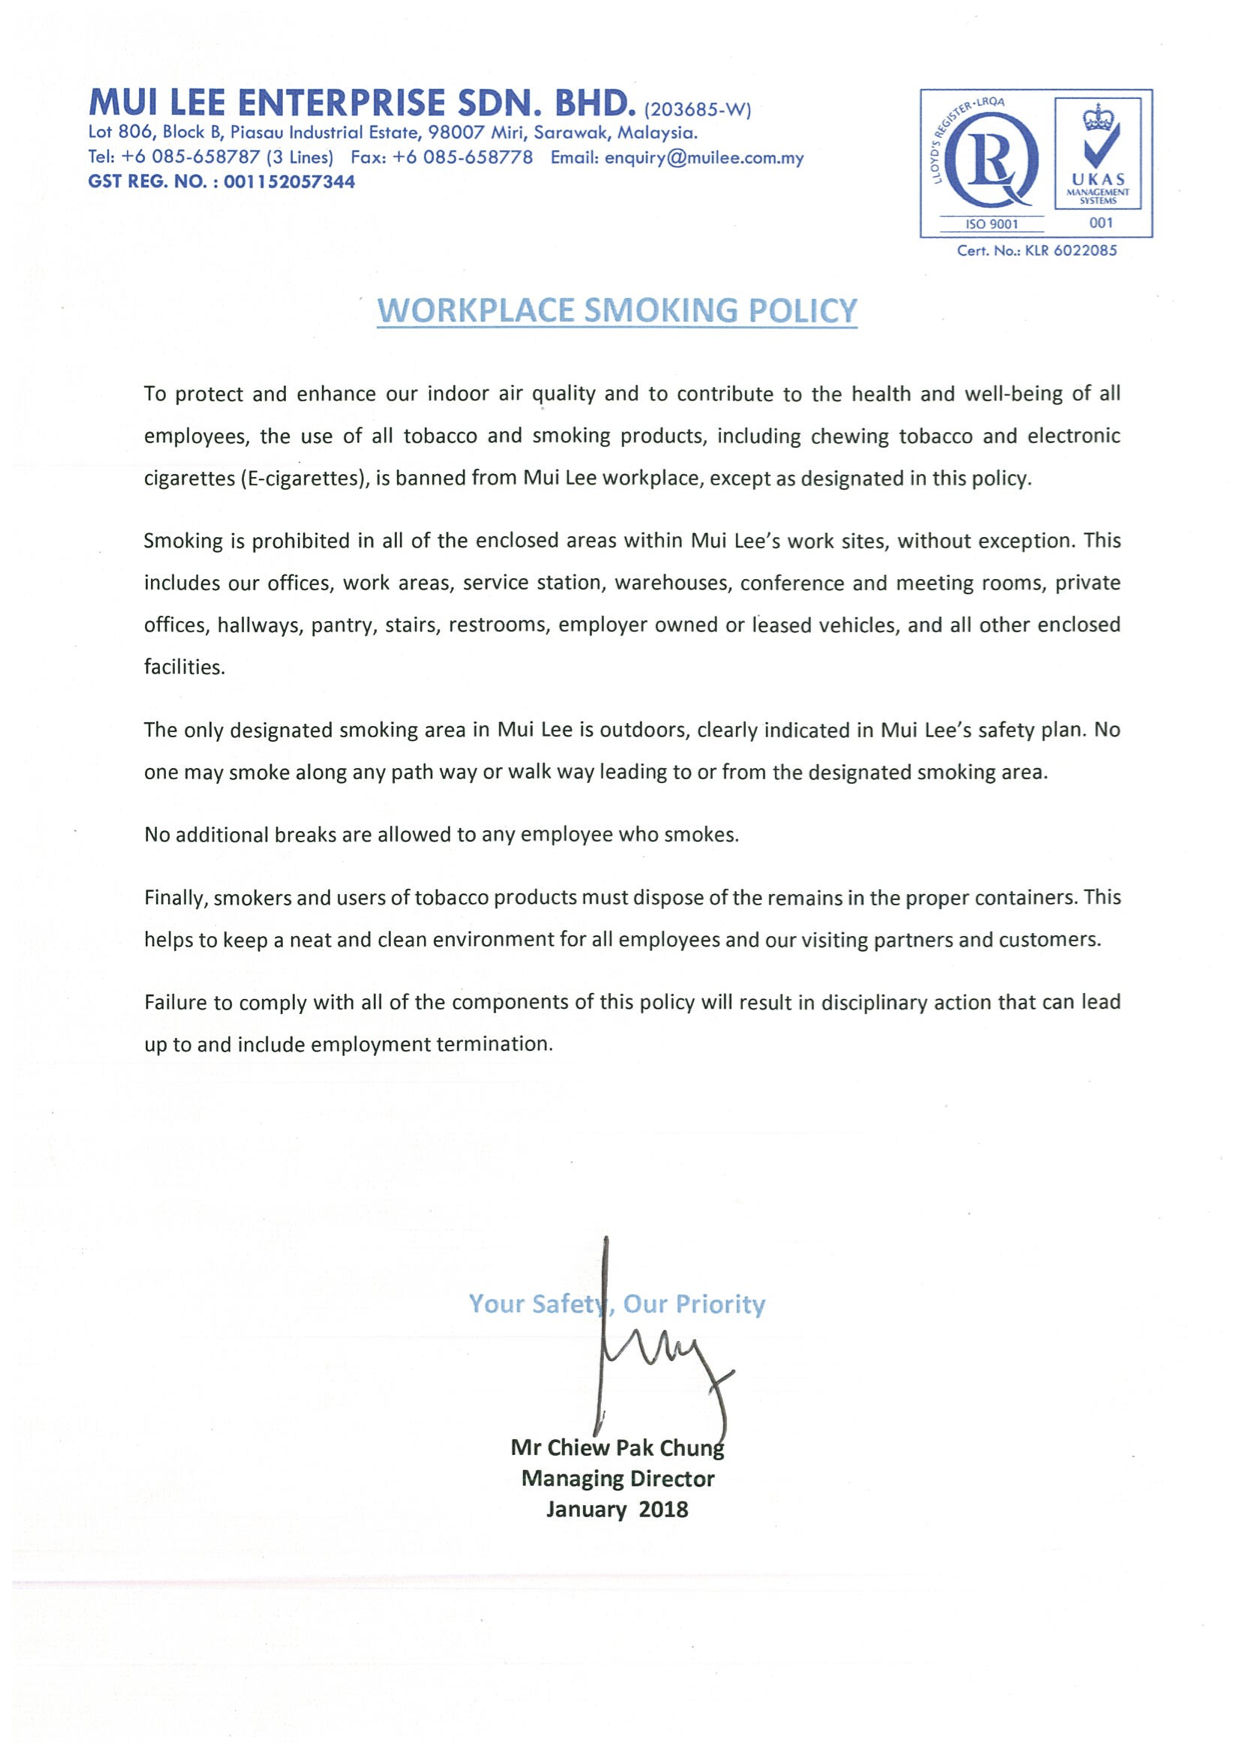 Workplace Smokinbg Policy